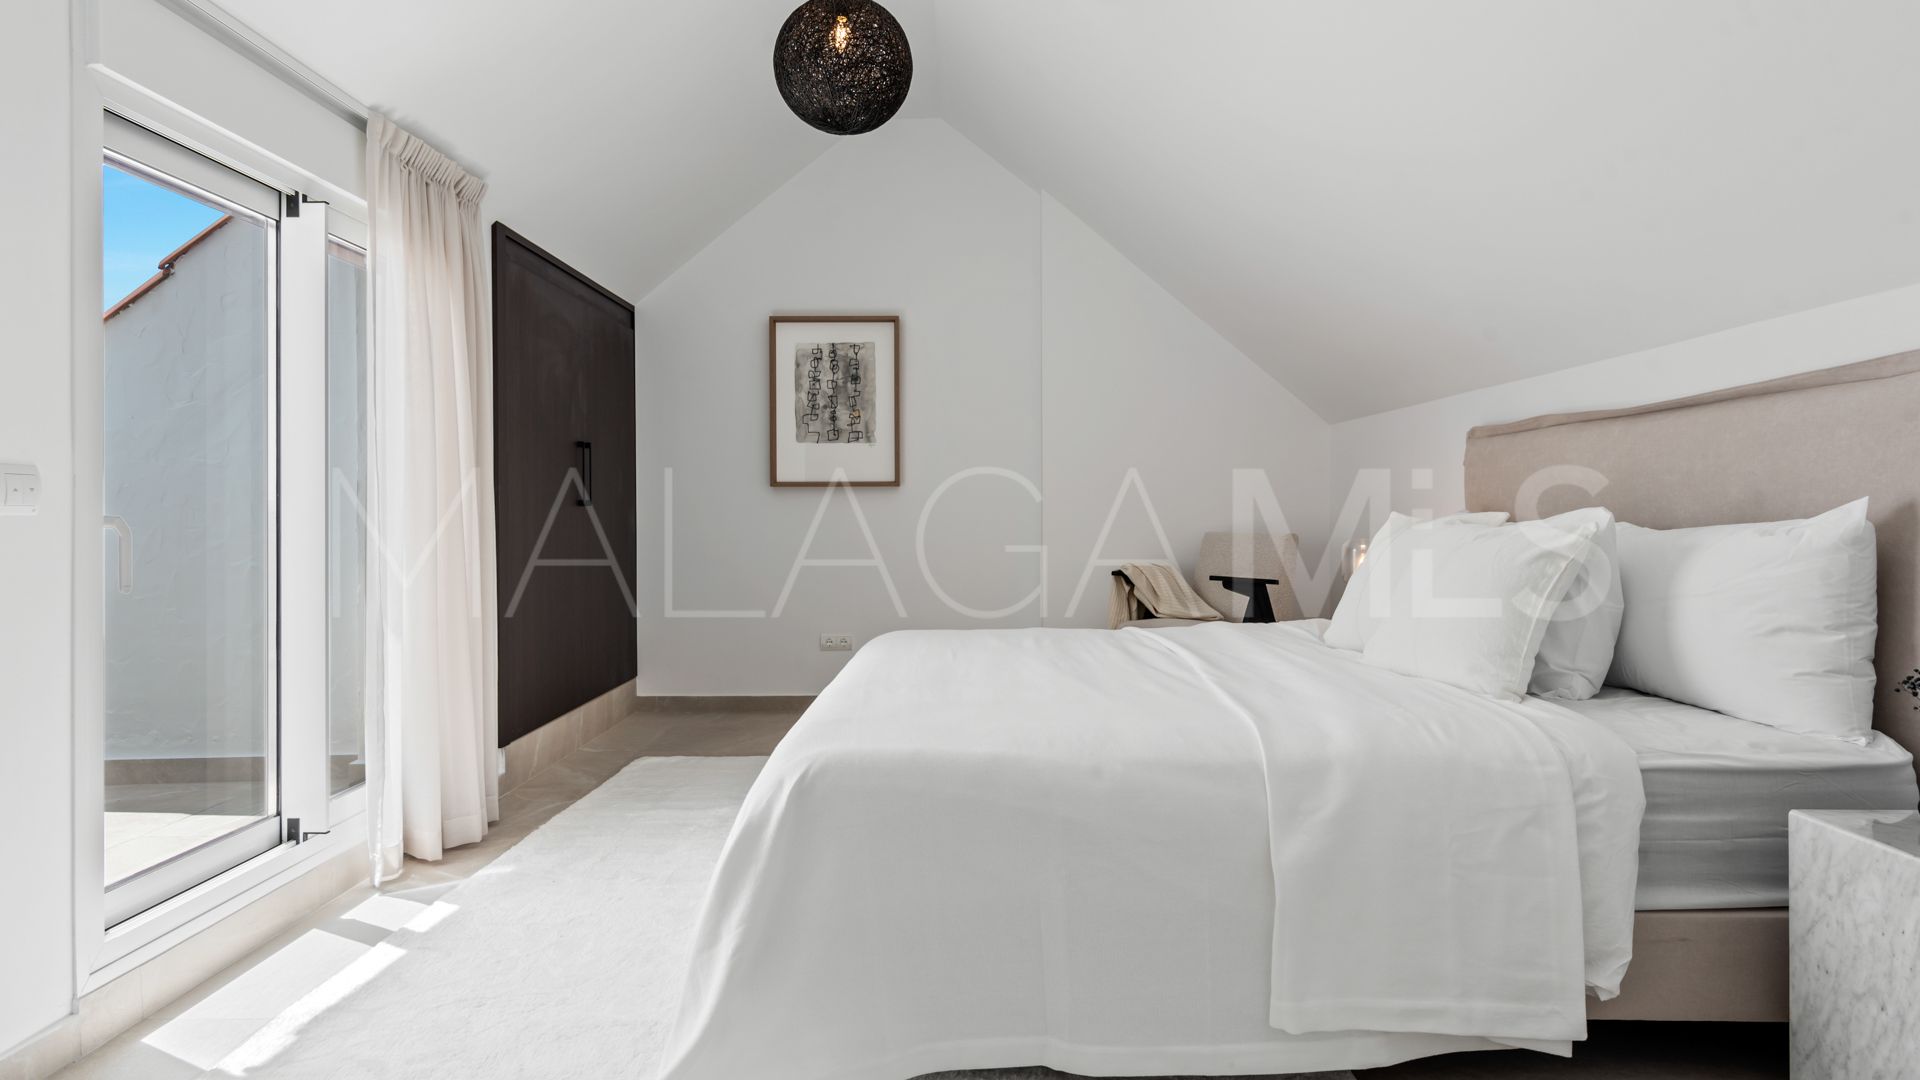 Atico for sale with 3 bedrooms in La Maestranza